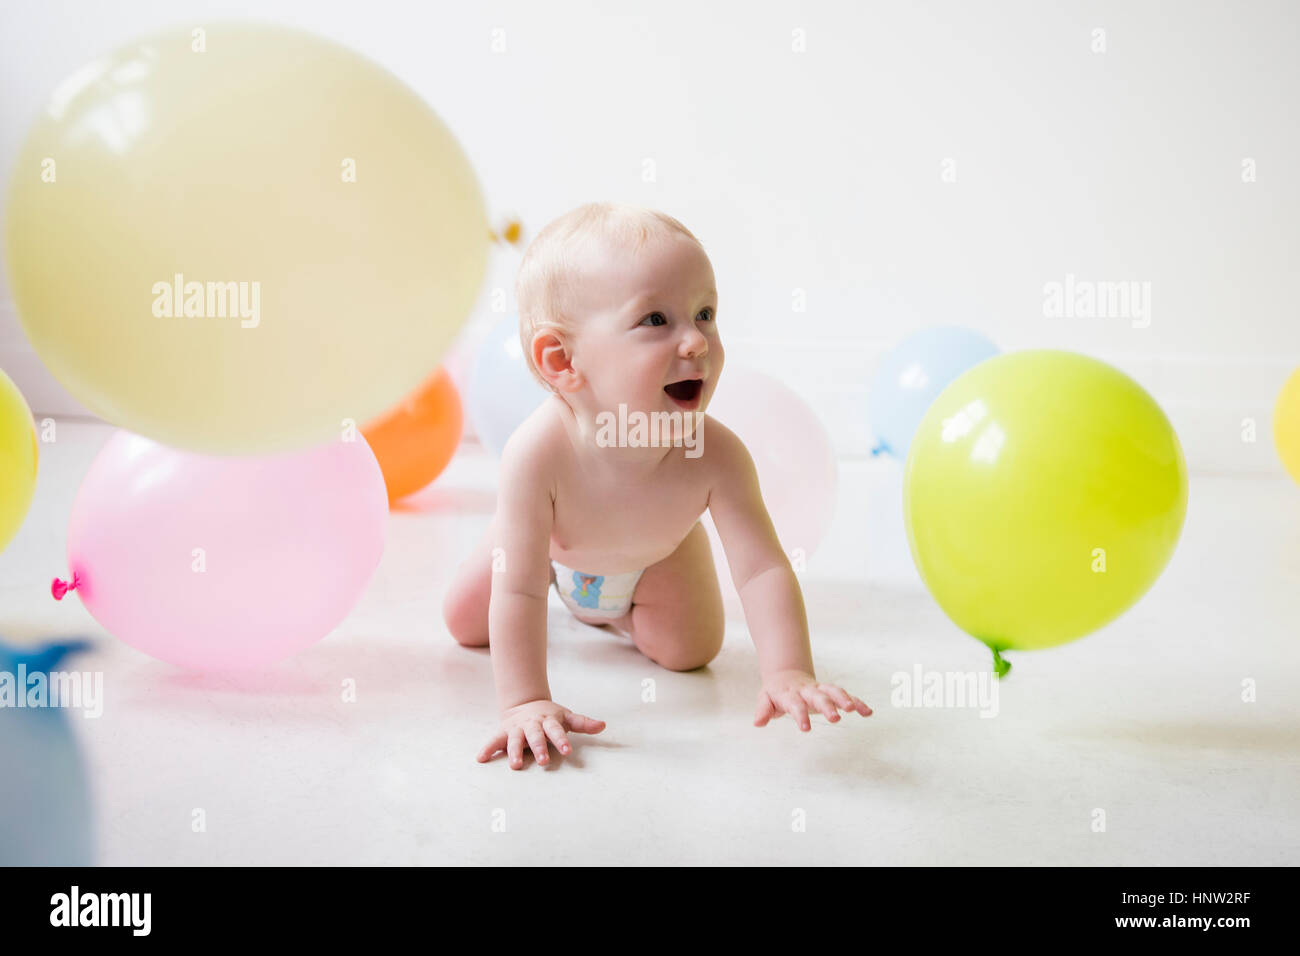 Kaukasische Babyjungen kriecht am Boden beobachten Ballons Stockfoto